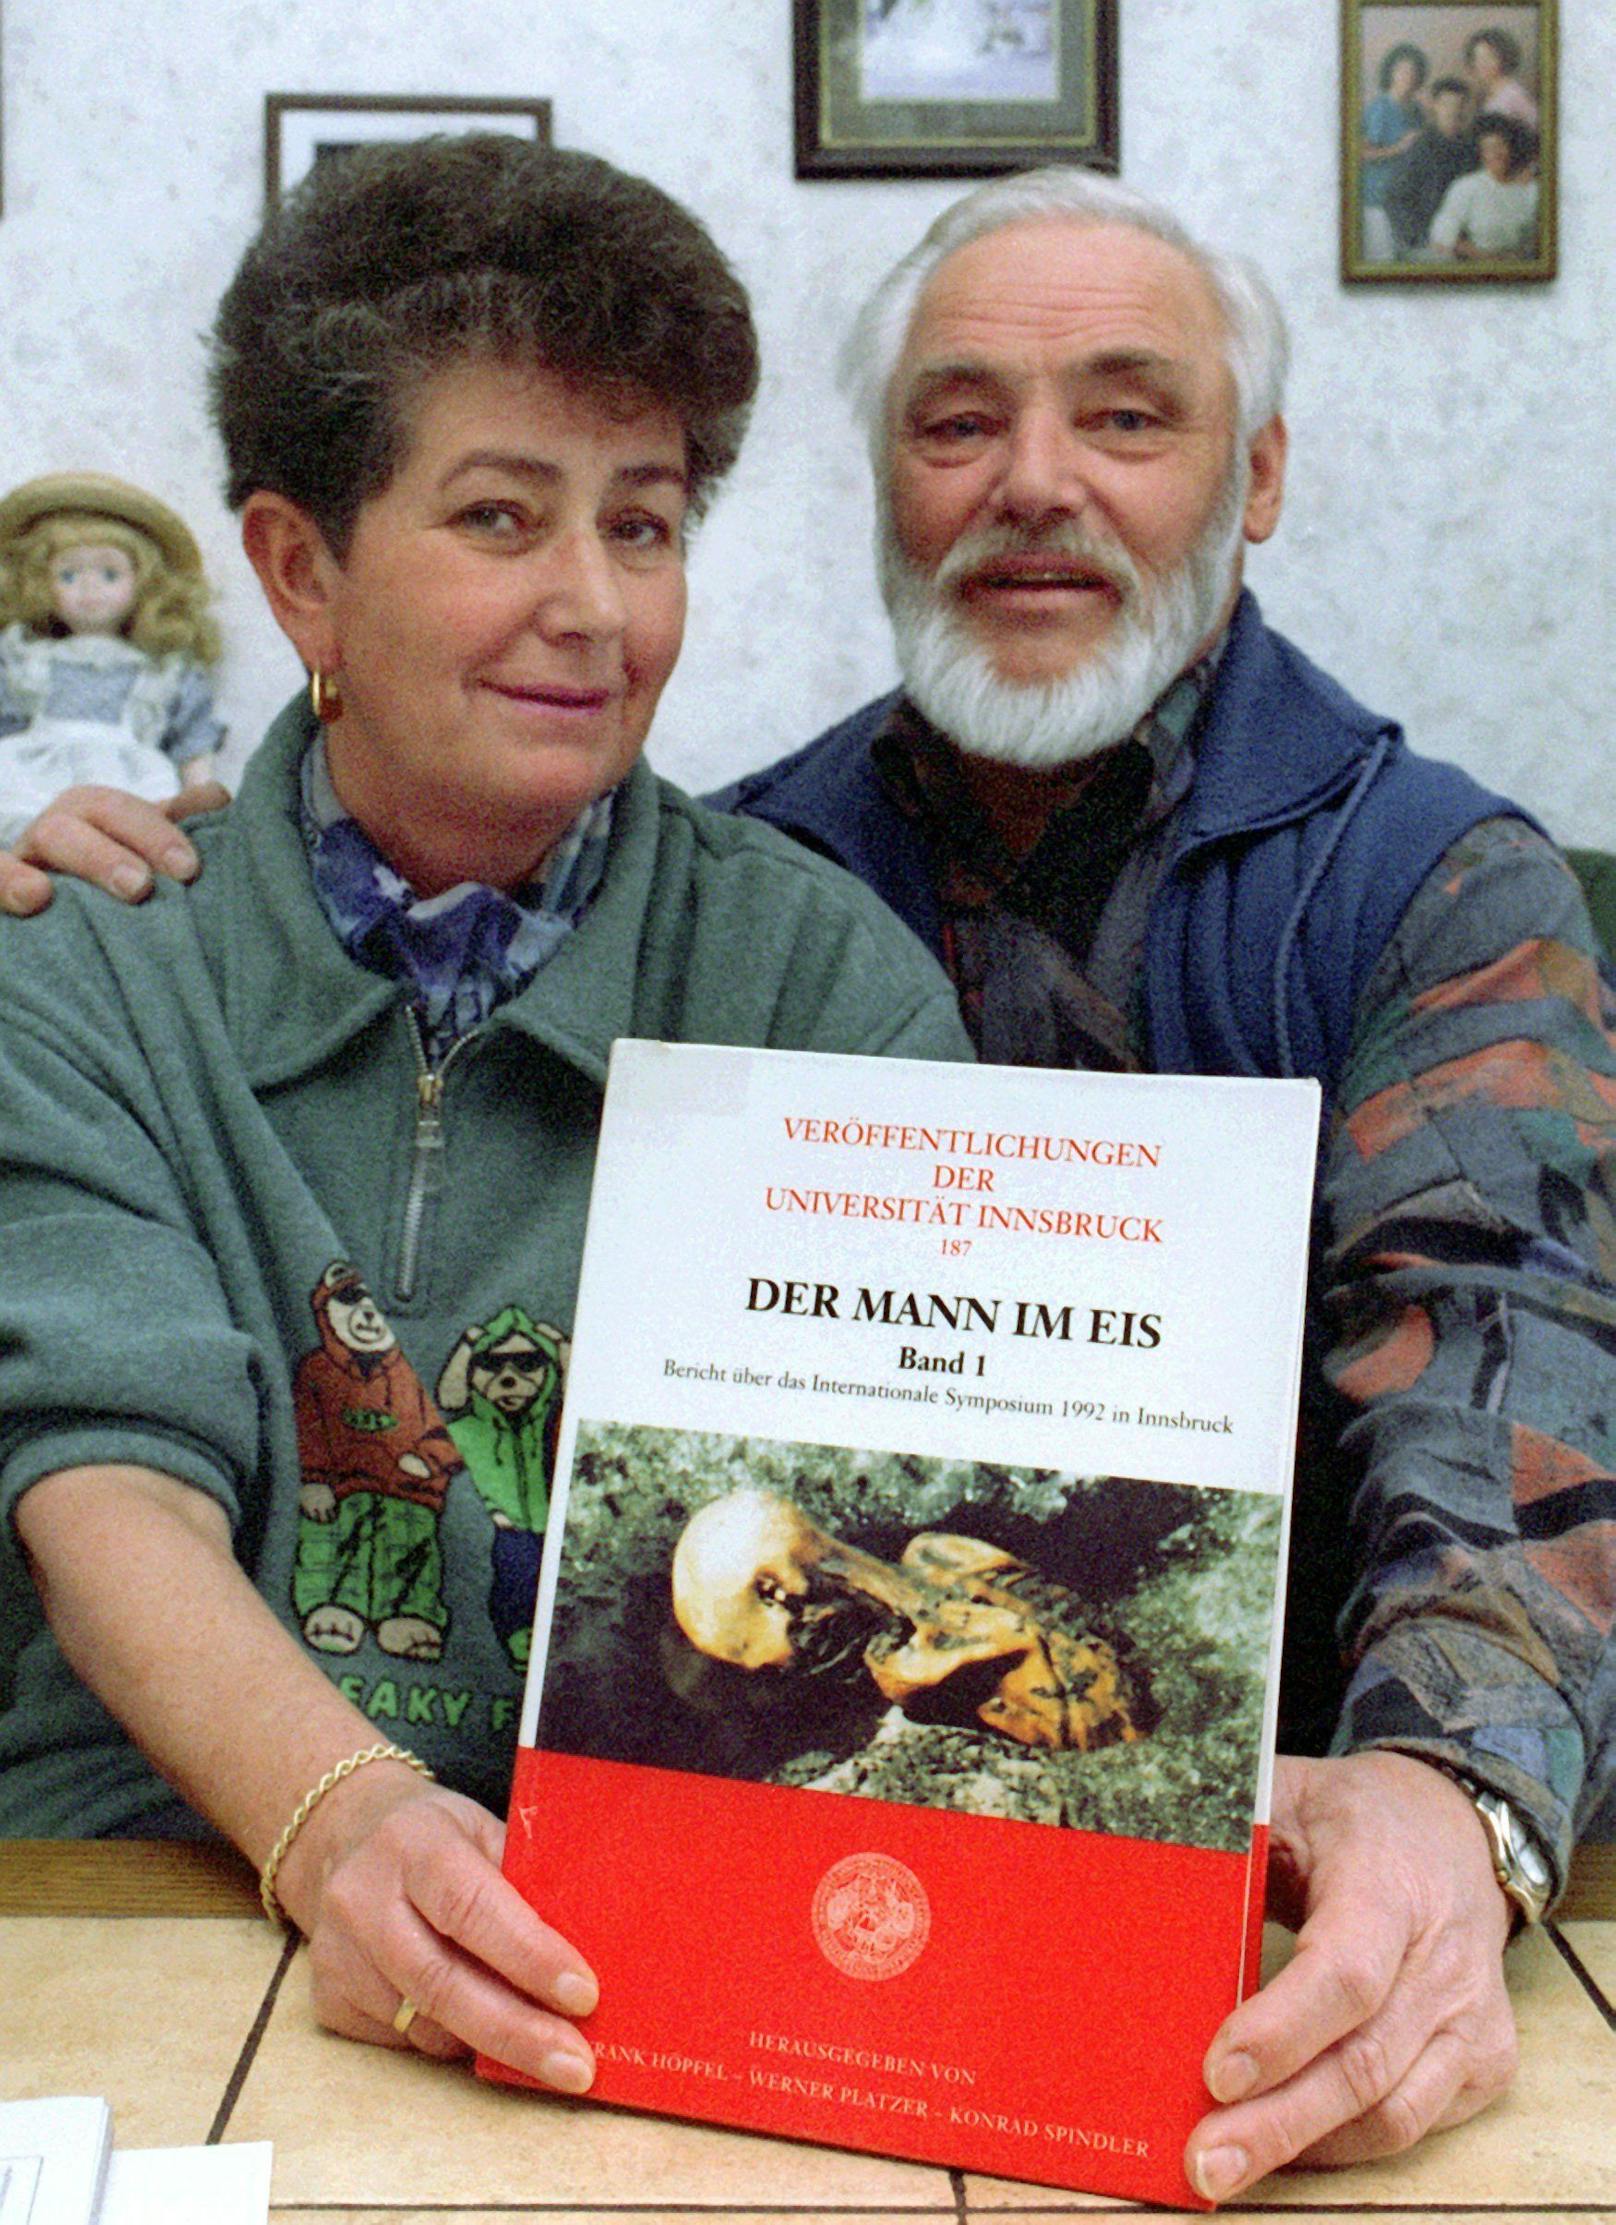 Das Nürnberger Ehepaar Helmut und Erika Simon zeigt am Freitag (30.01.1998) ein Buch über "Ötzi". Das Paar hatte die 5000 Jahre in einem Gletscher liegende Mumie 1991 beim Abstieg vom Gipfel des Similauns in Südtirol entdeckt. 